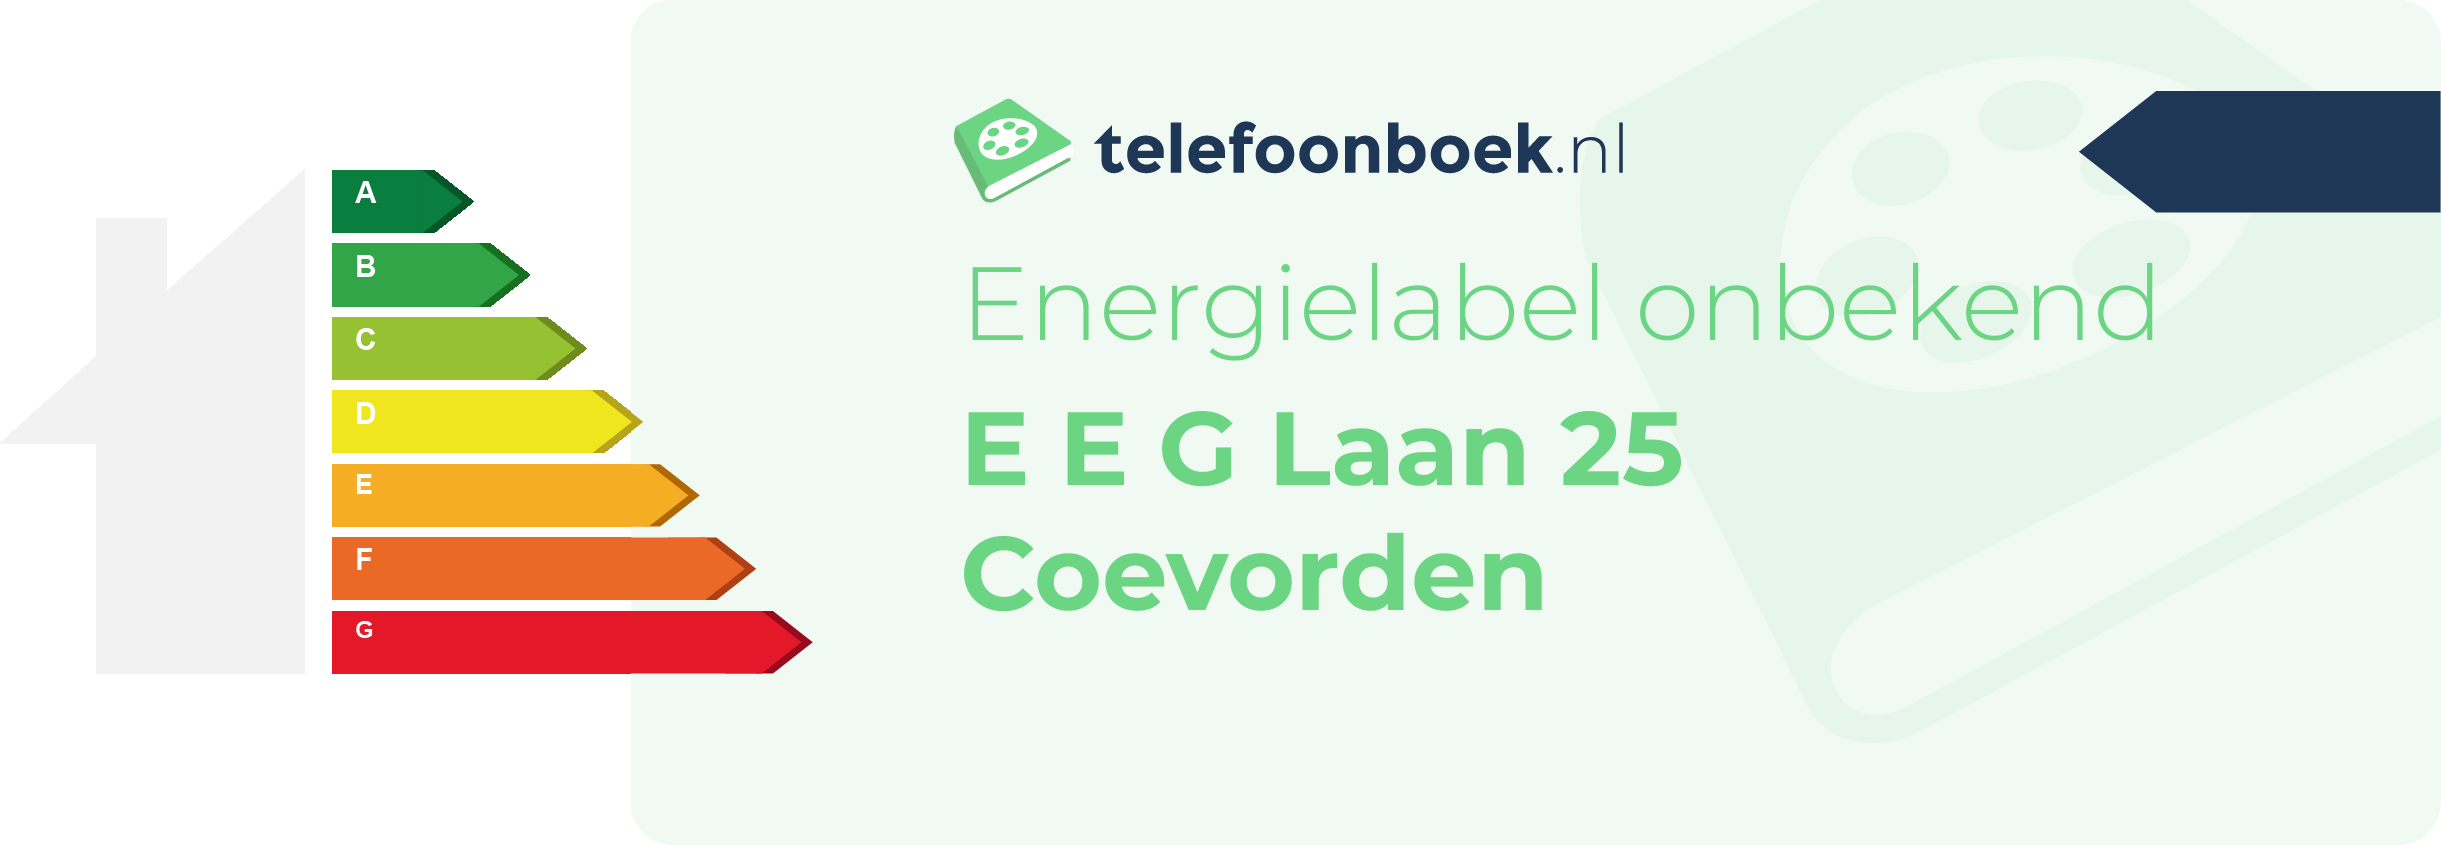 Energielabel E E G Laan 25 Coevorden